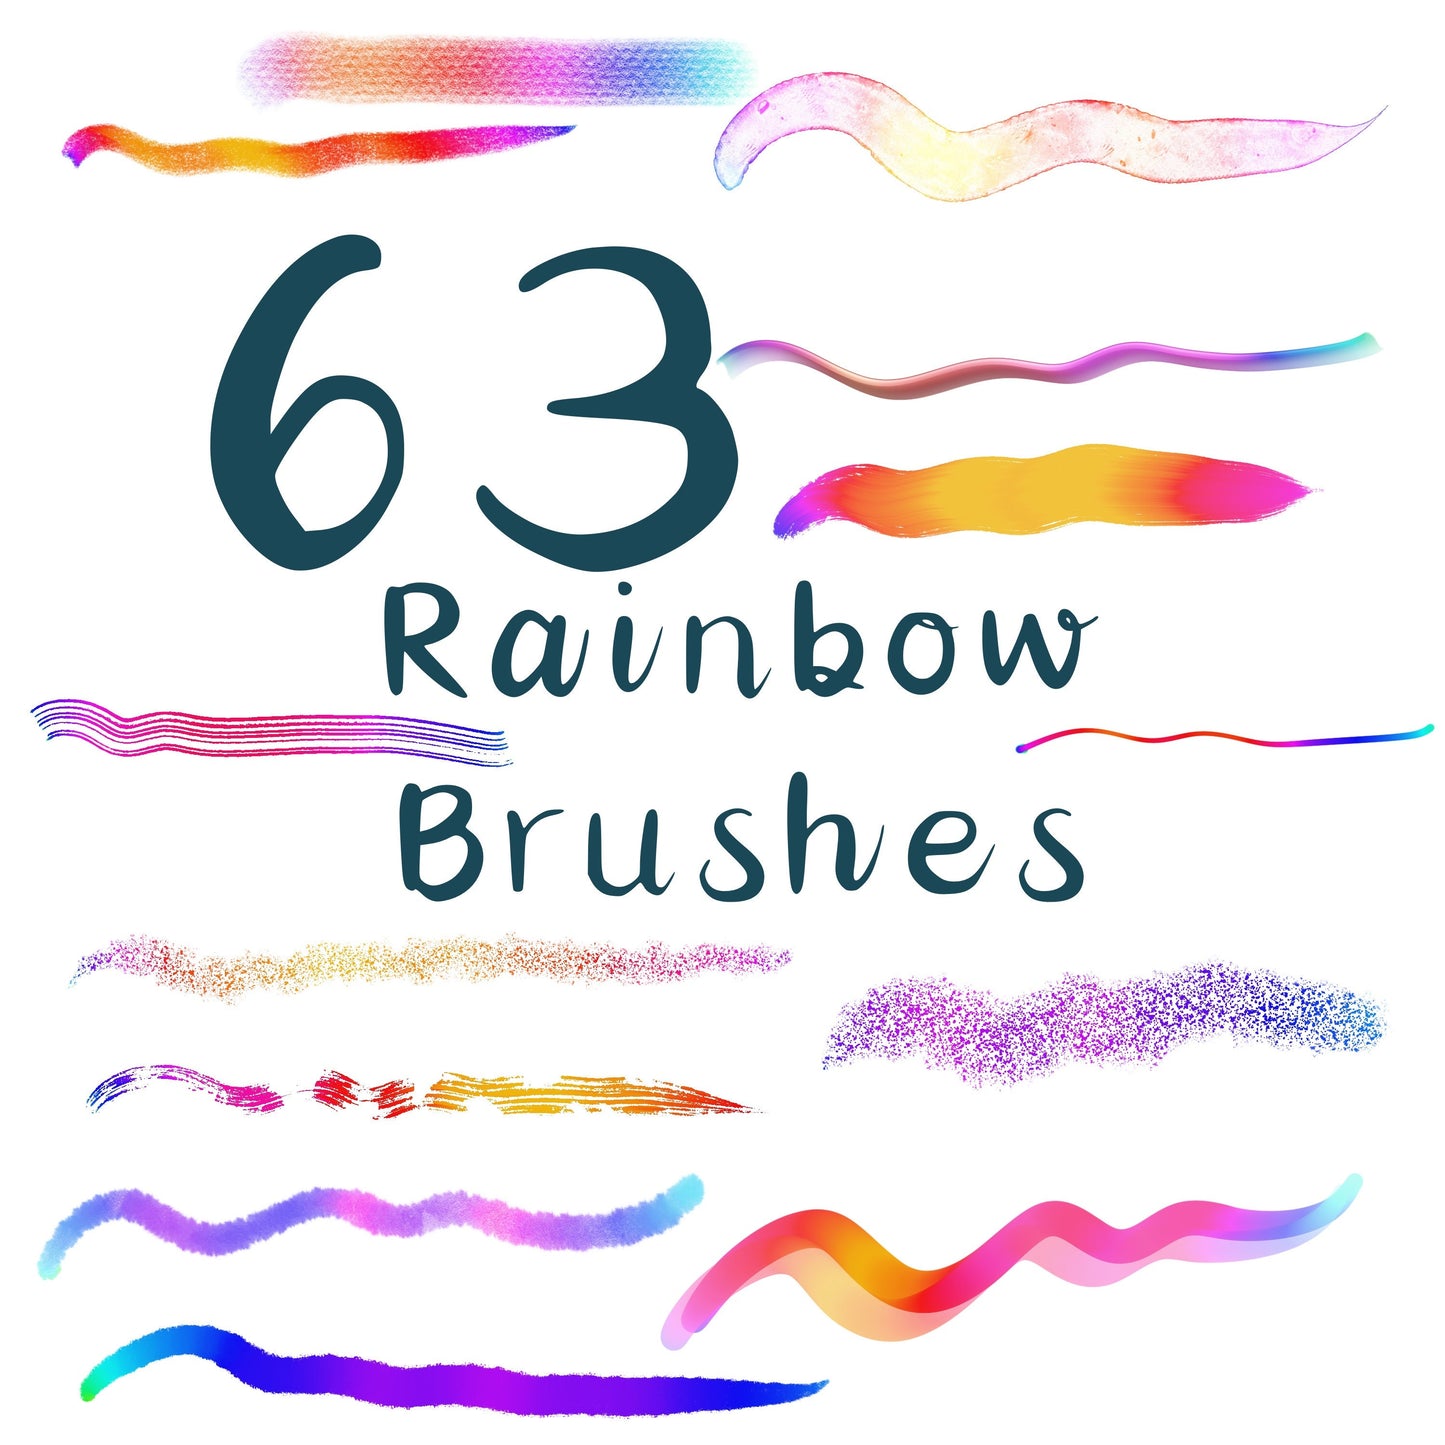 63 Rainbow Brushes for Procreate